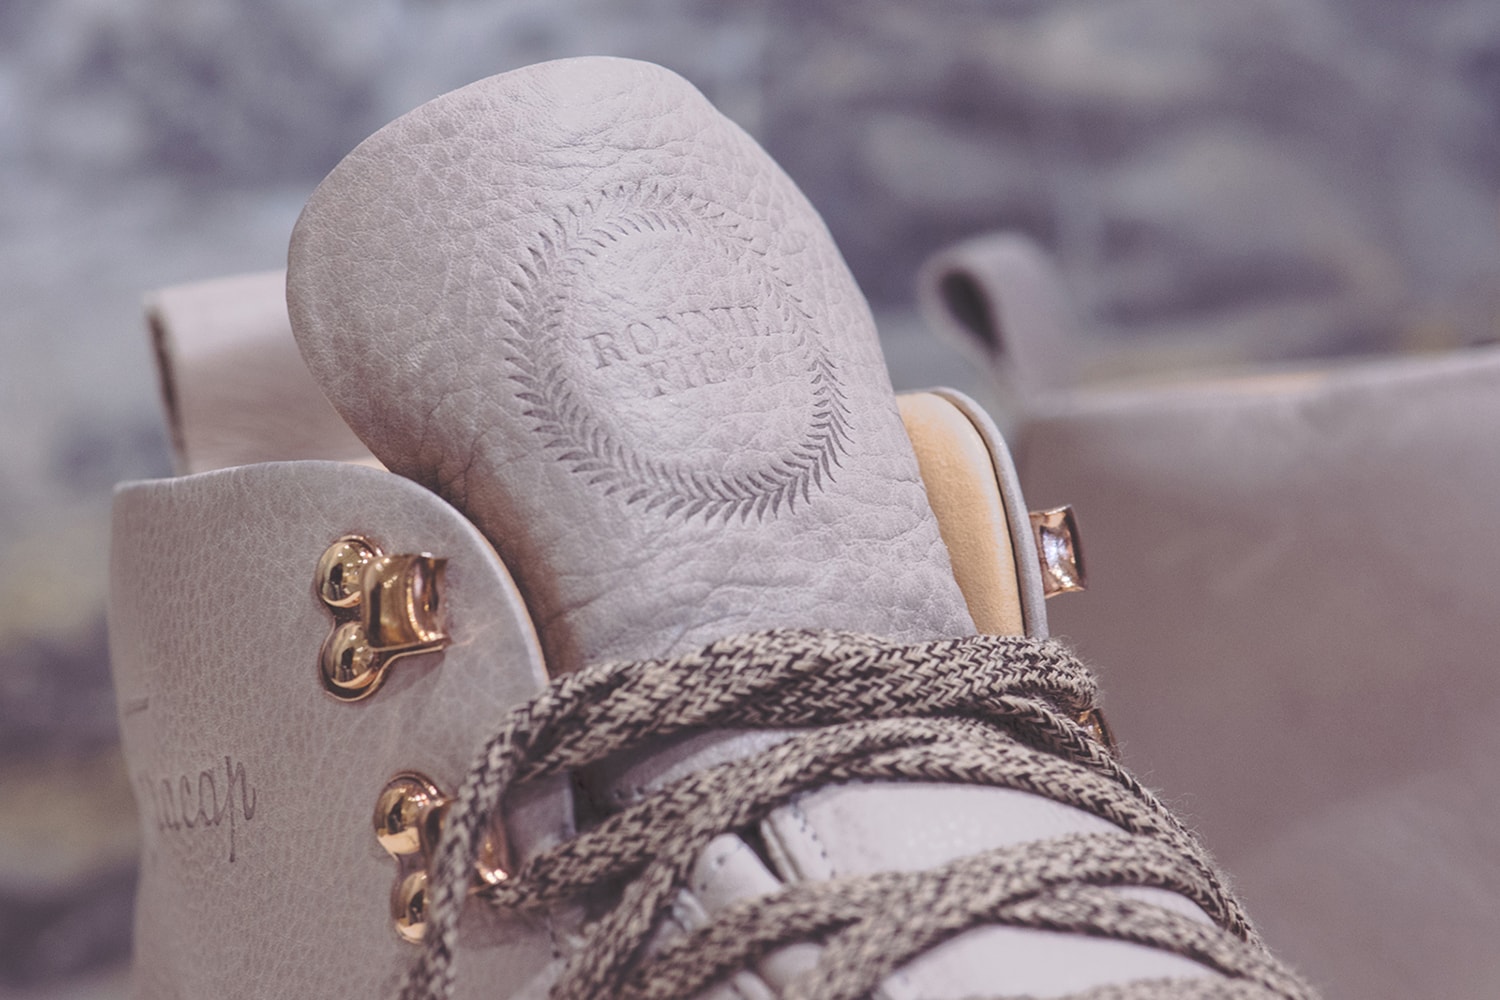 로니 피그 프라캡 겨울 부츠 컬렉션 ronnie fieg fracap winter boots collection rf120 2017